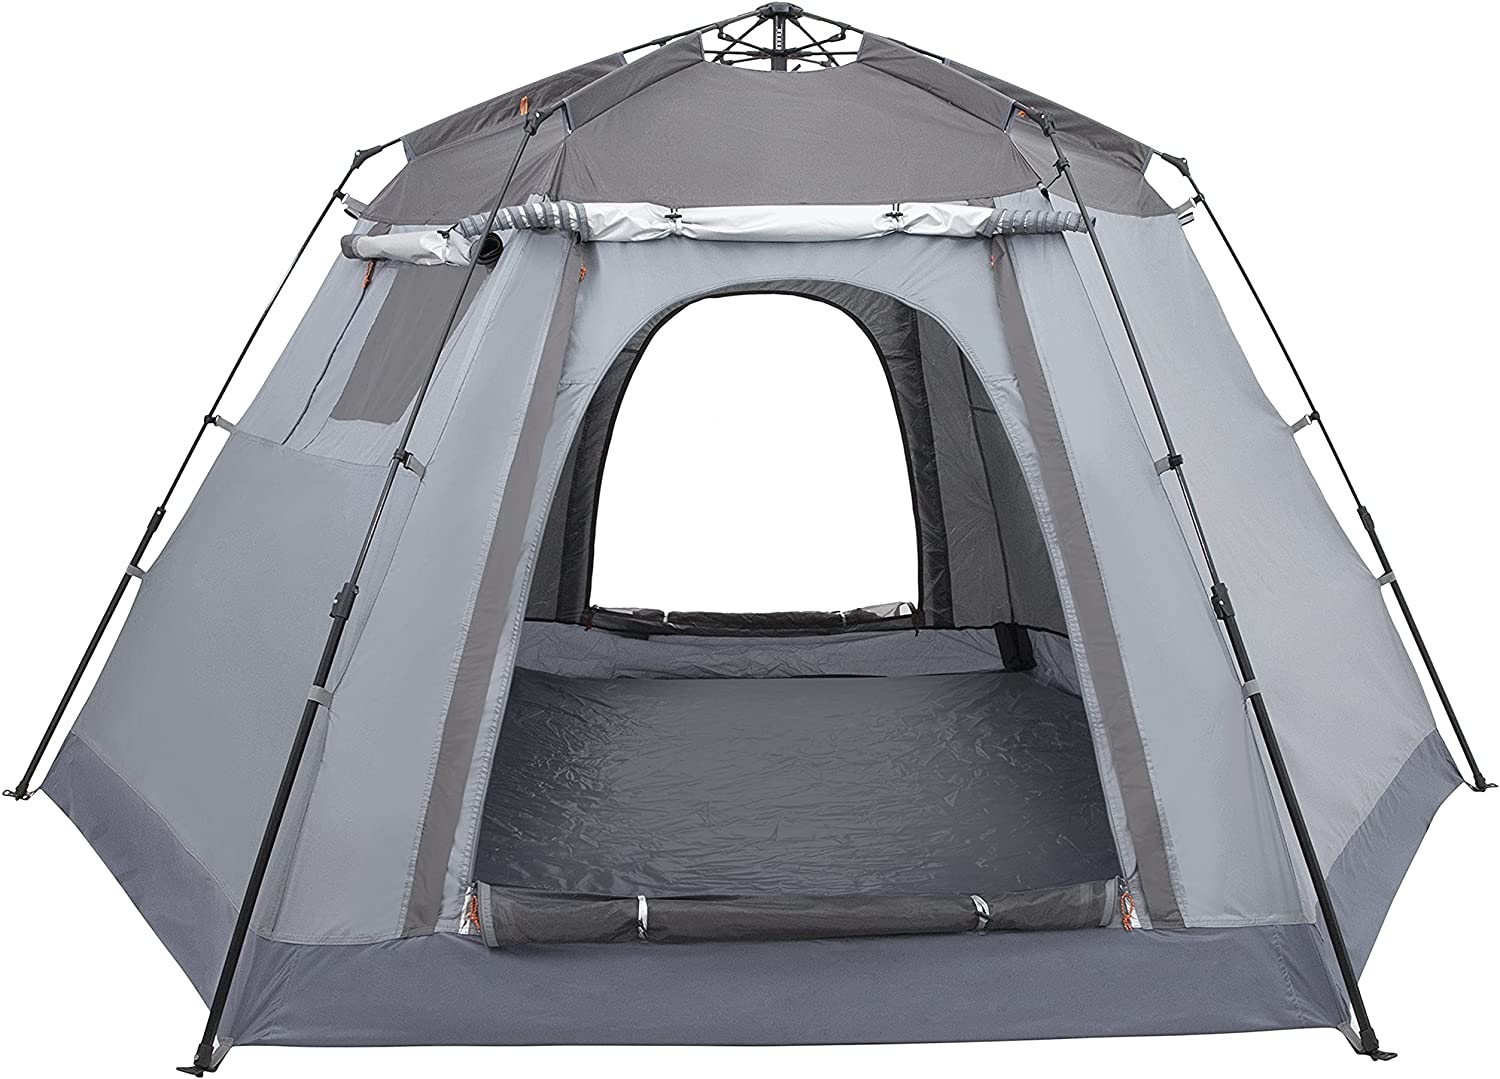 Ubon kültéri kempingsátrak 6 fő részére, vízálló, azonnal felállítható sátor Kétrétegű családi sátor kivehető Rain-Fly extra nagy kabinos sátor napernyővel 3 évszakra